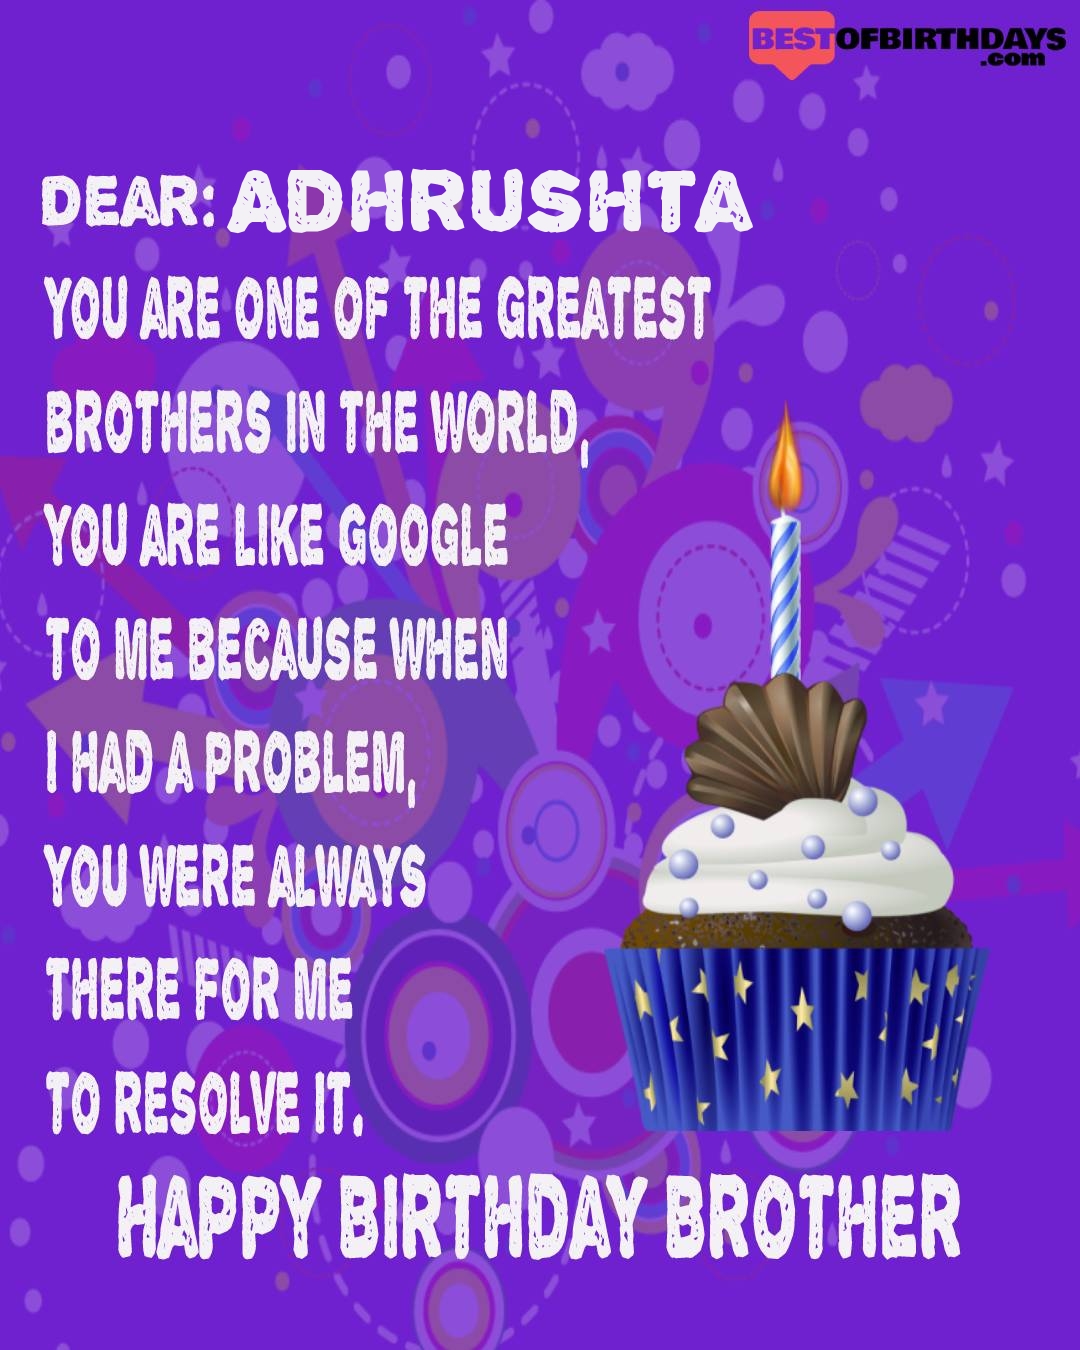 Happy birthday adhrushta bhai brother bro